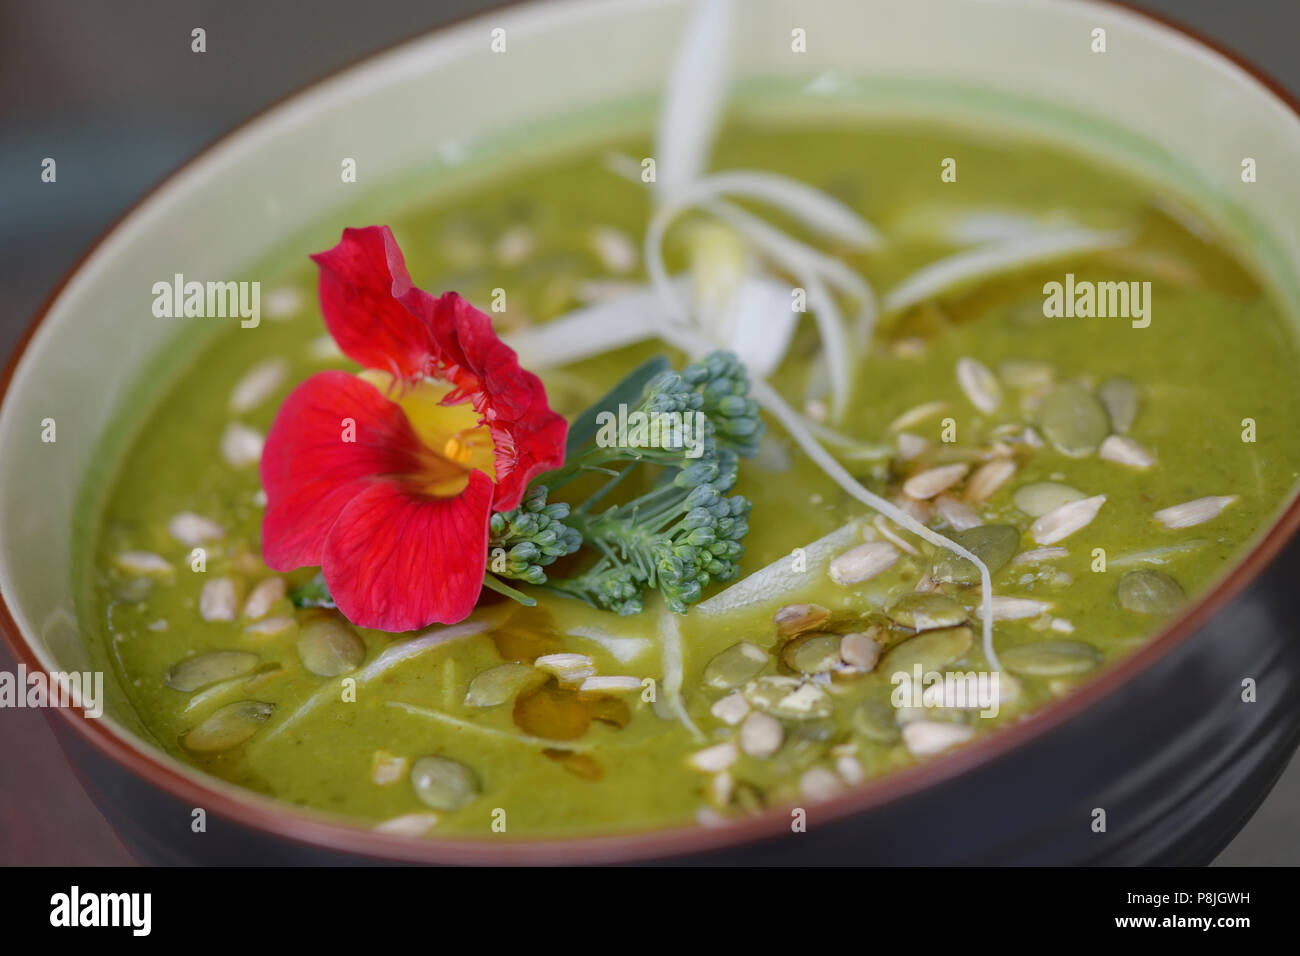 Eine Schüssel mit gesunden grünen Göttin hausgemachte Suppe aus frisch pürierte organische Grüns und Gemüse mit Kapuzinerkresse und kürbiskerne eingerichtet Stockfoto